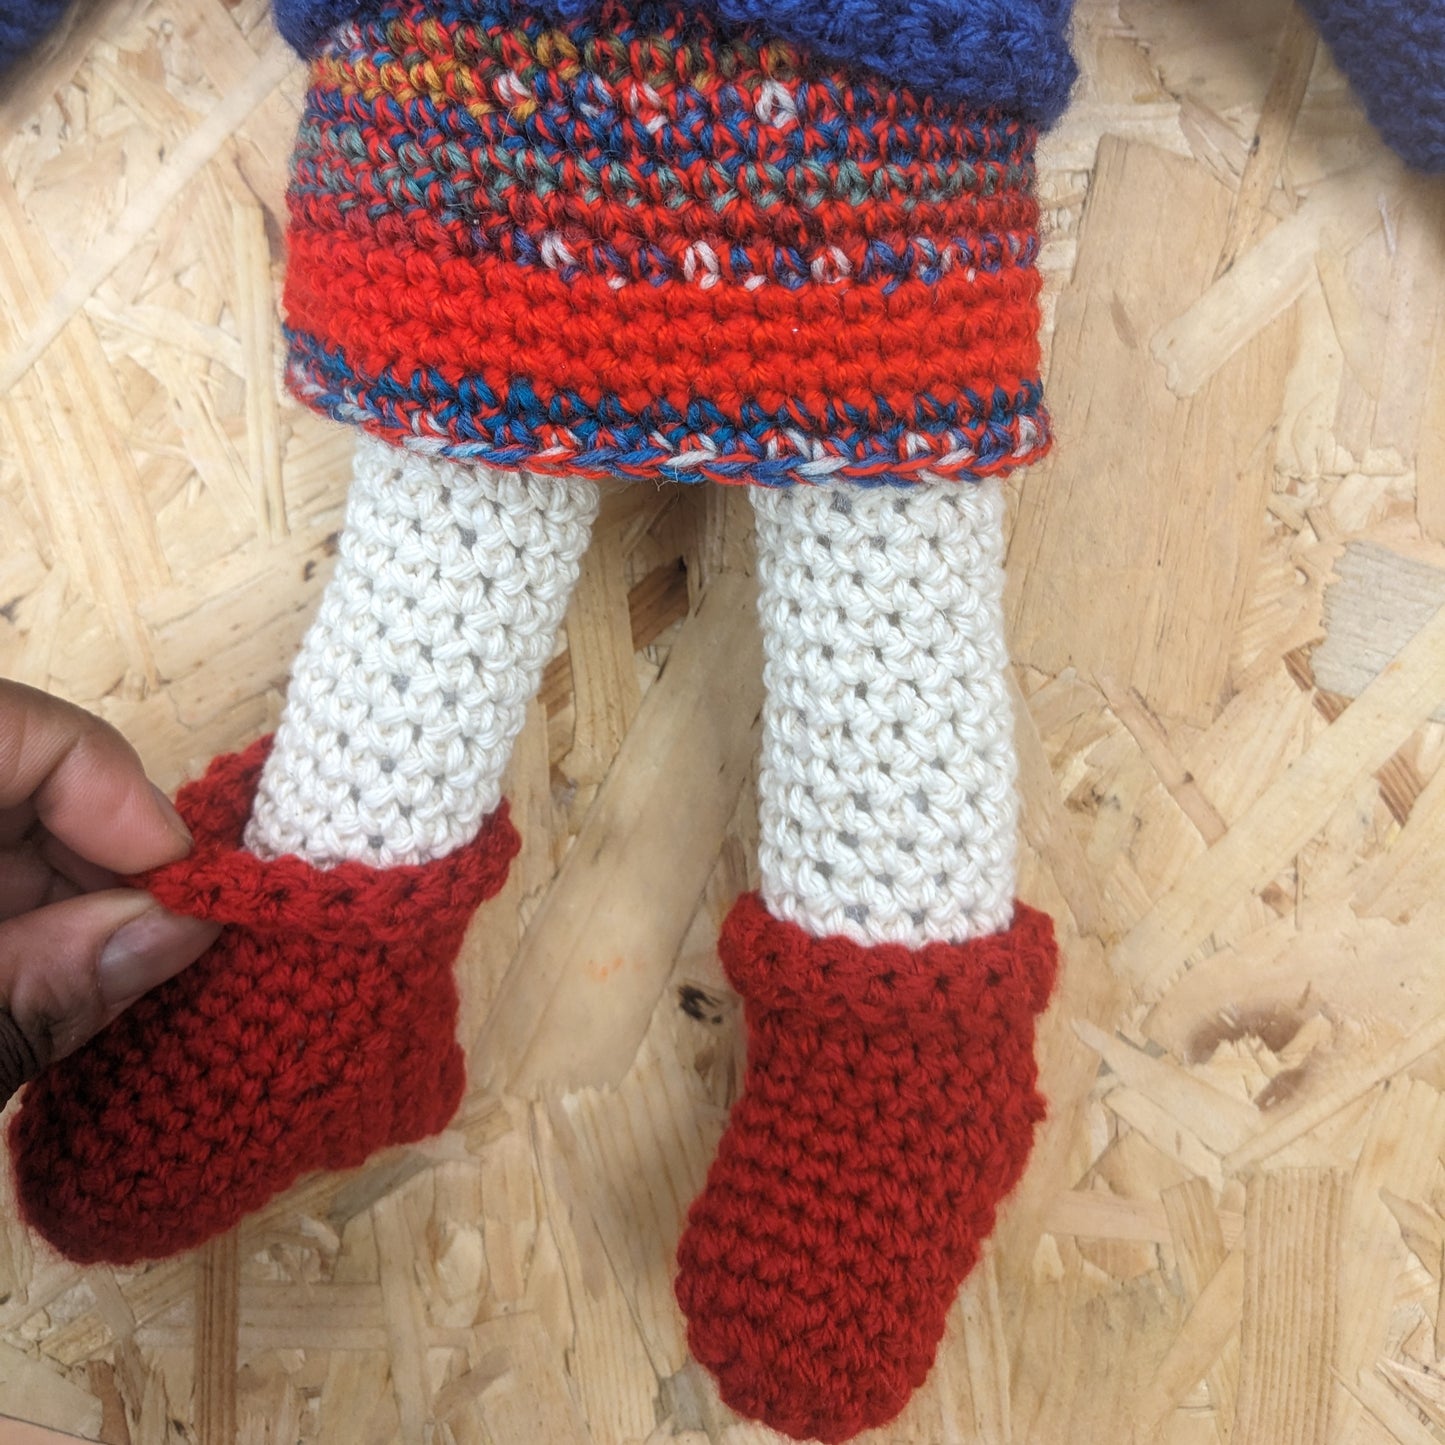 Handmade Crochet doll